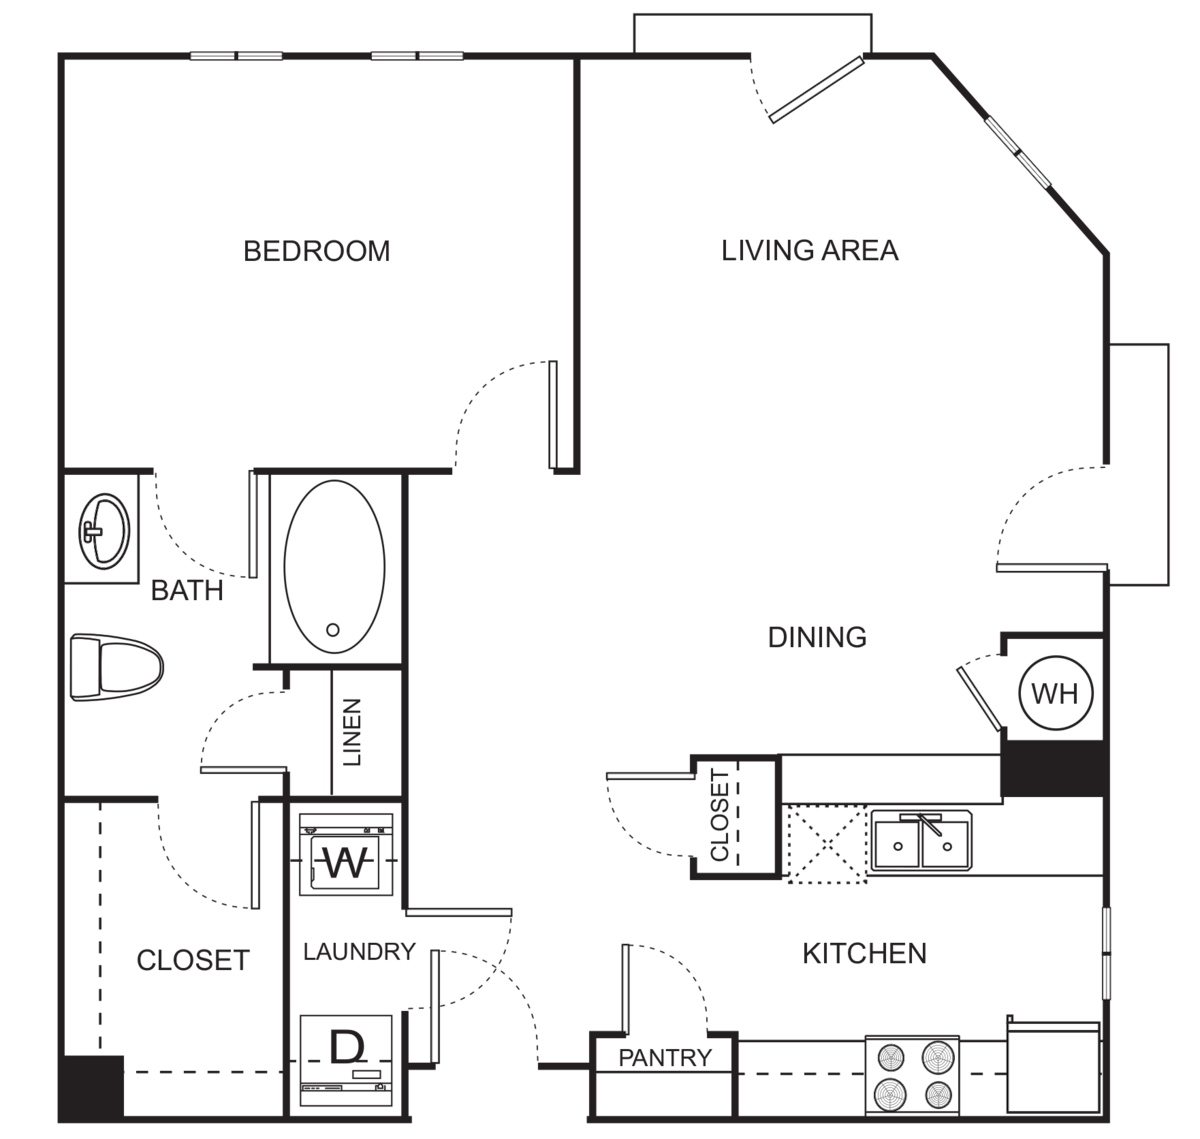 Floorplan diagram for A0-C One Bedroom, showing Studio